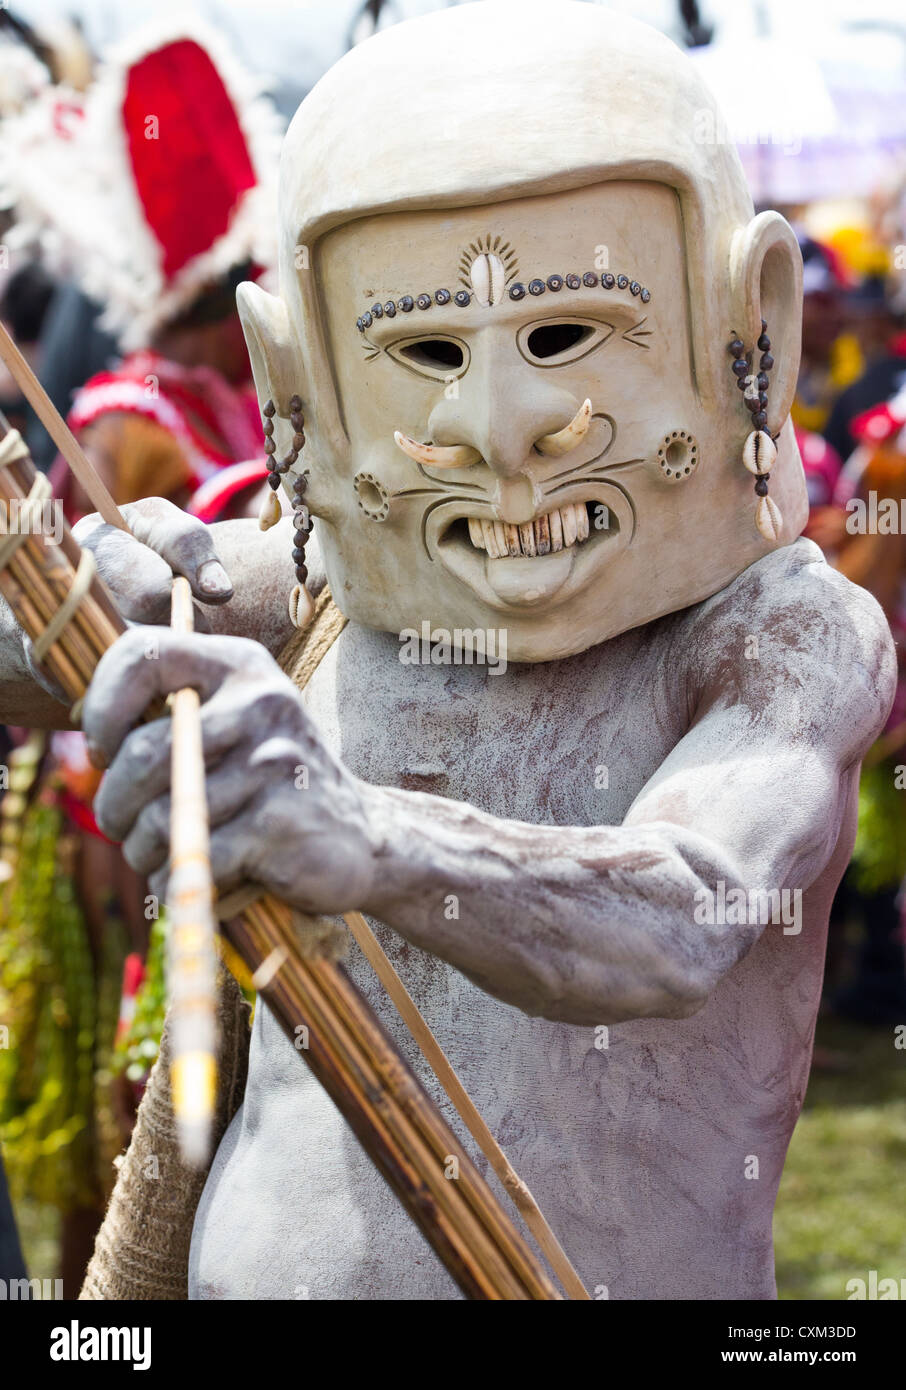 La boue un homme portant un masque de boue au Festival de Goroka singsing, Papouasie Nouvelle Guinée Banque D'Images